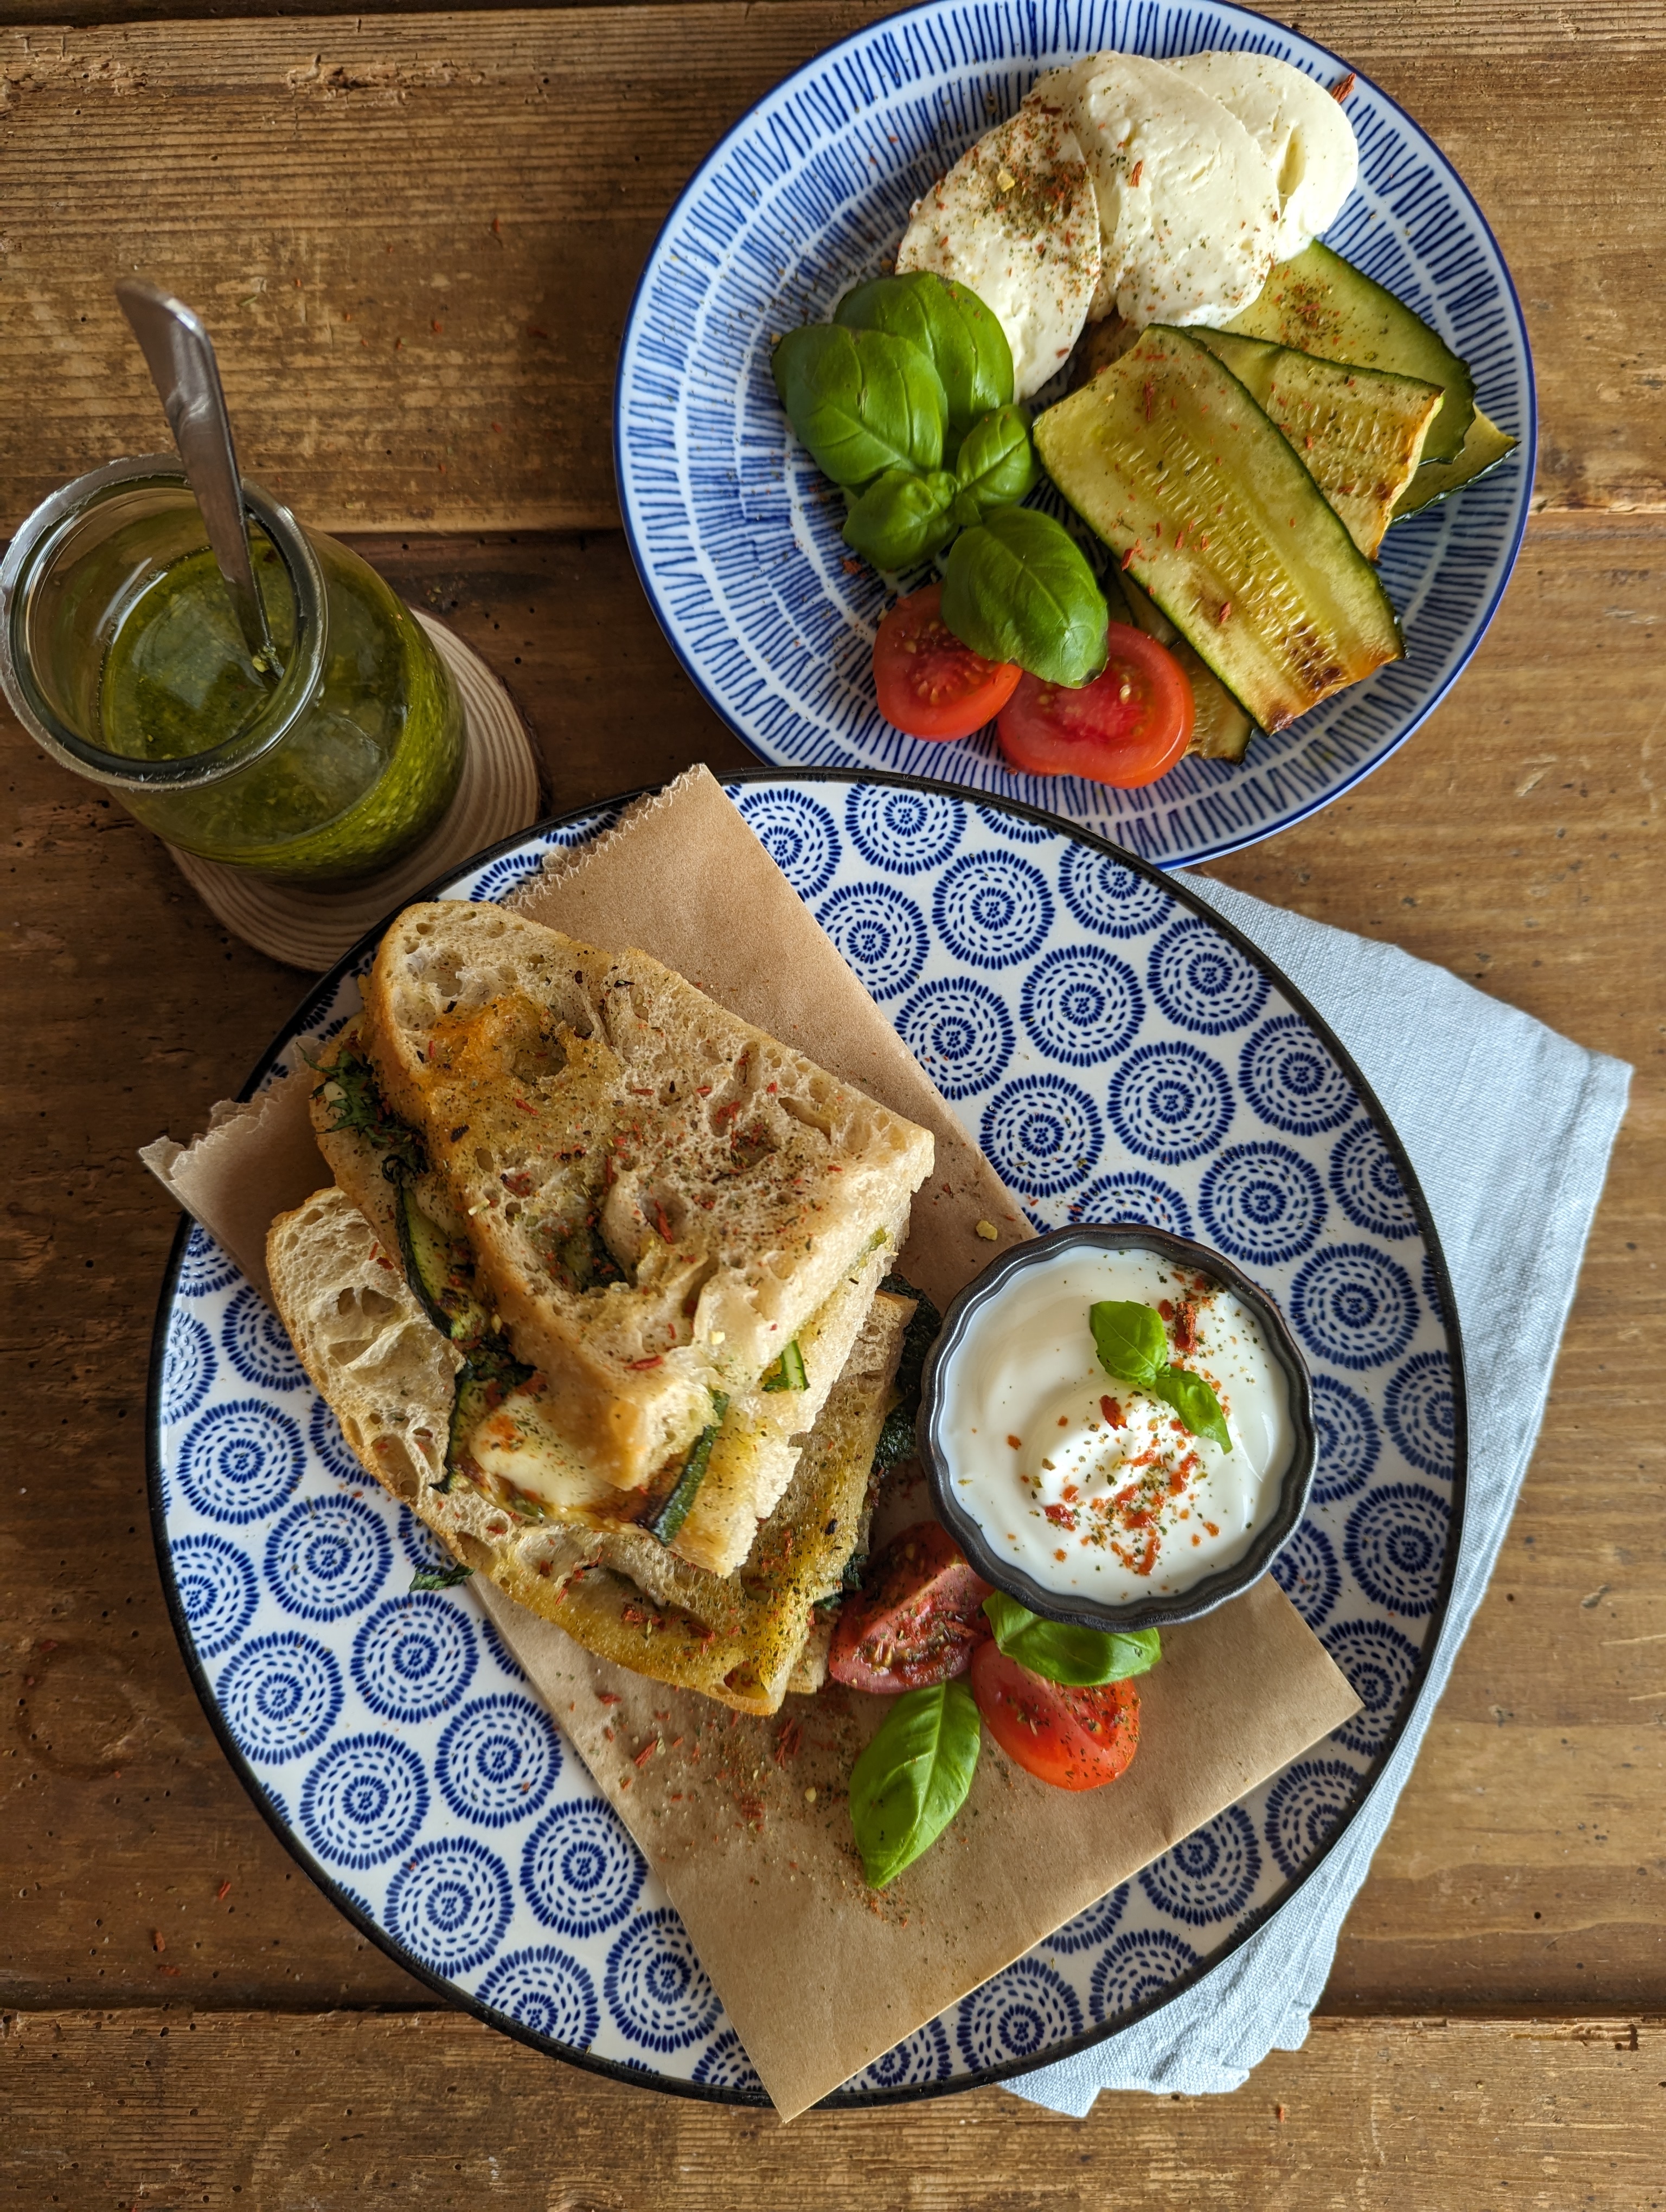 Sommerliches Sandwich mit Zucchini, Tomate und Mozzarella bei Salzburg schmeckt